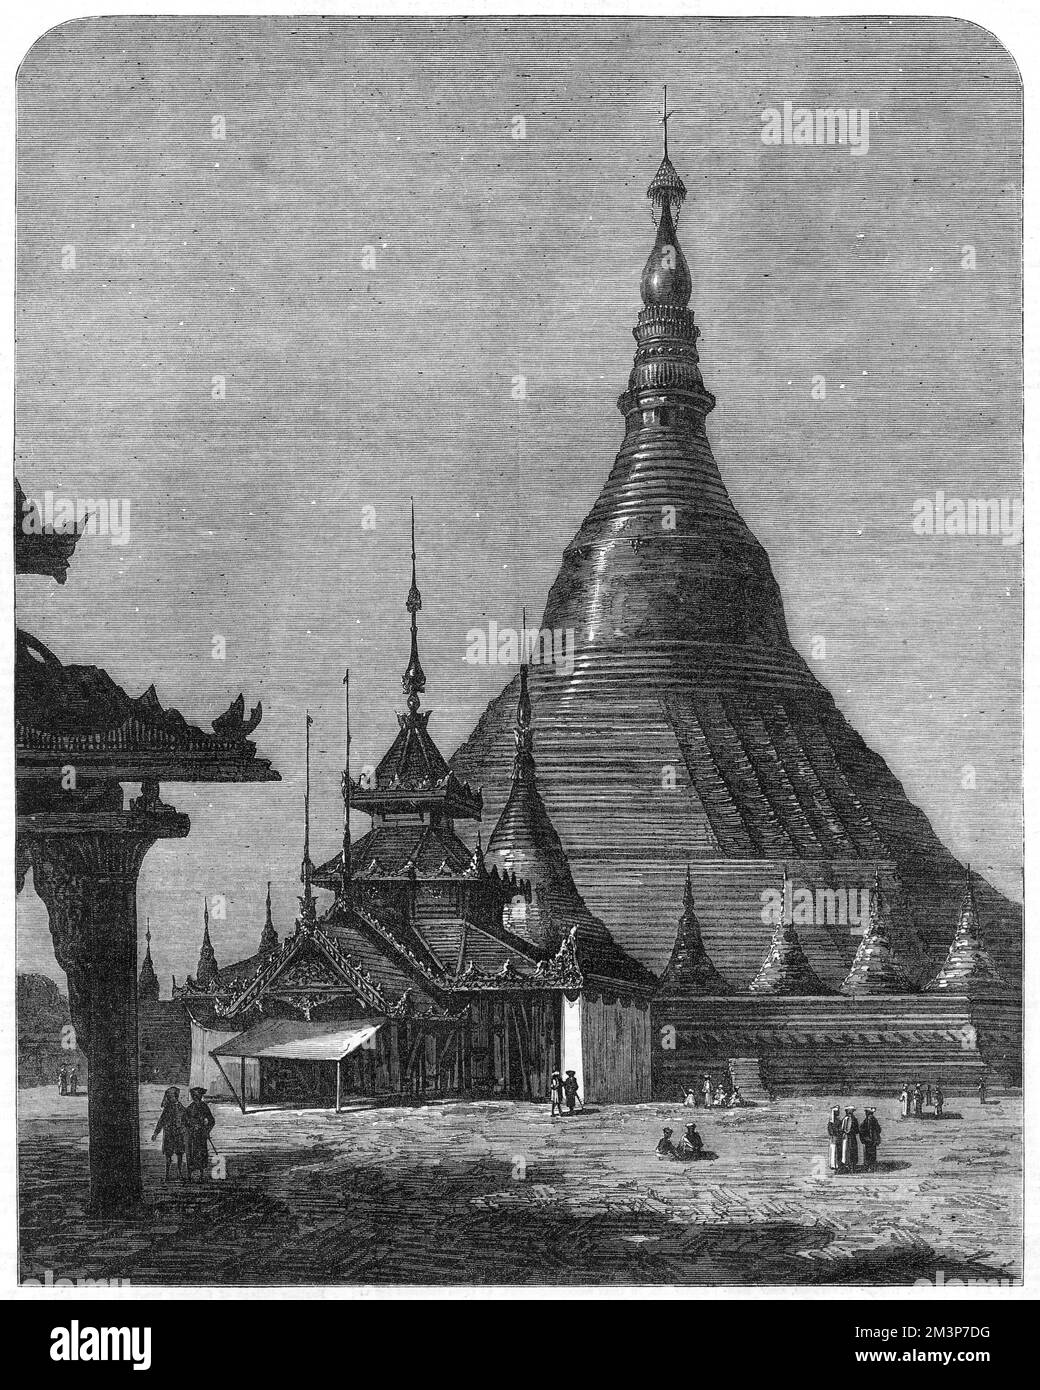 La Pagode Shweidagon à Yangon, en Birmanie (Myanmar), officiellement nommée Shweidago Zedi Daw et également connue sous le nom de Pagode d'or, ou la Grande Pagode de Dagon. La structure dorée mesure 99 mètres de haut. Date: 1872 Banque D'Images